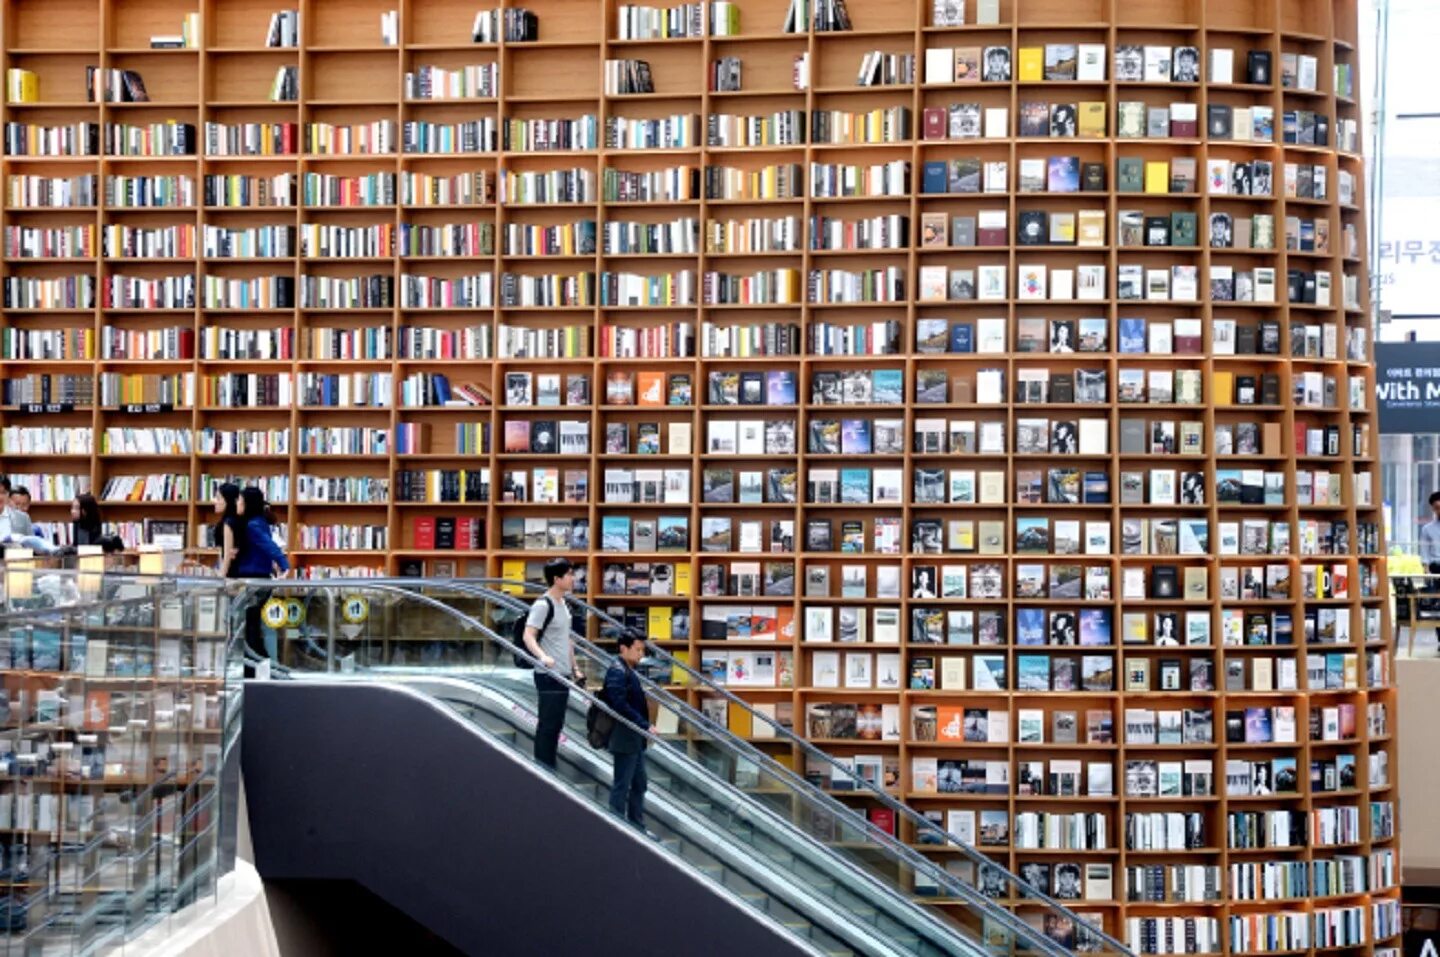 Ночной книжный магазин. Библиотека Starfield Library. Южная Корея. Сеул библиотека Starfield. Национальная библиотека Южной Кореи. Библиотека в Сеуле Южная Корея.